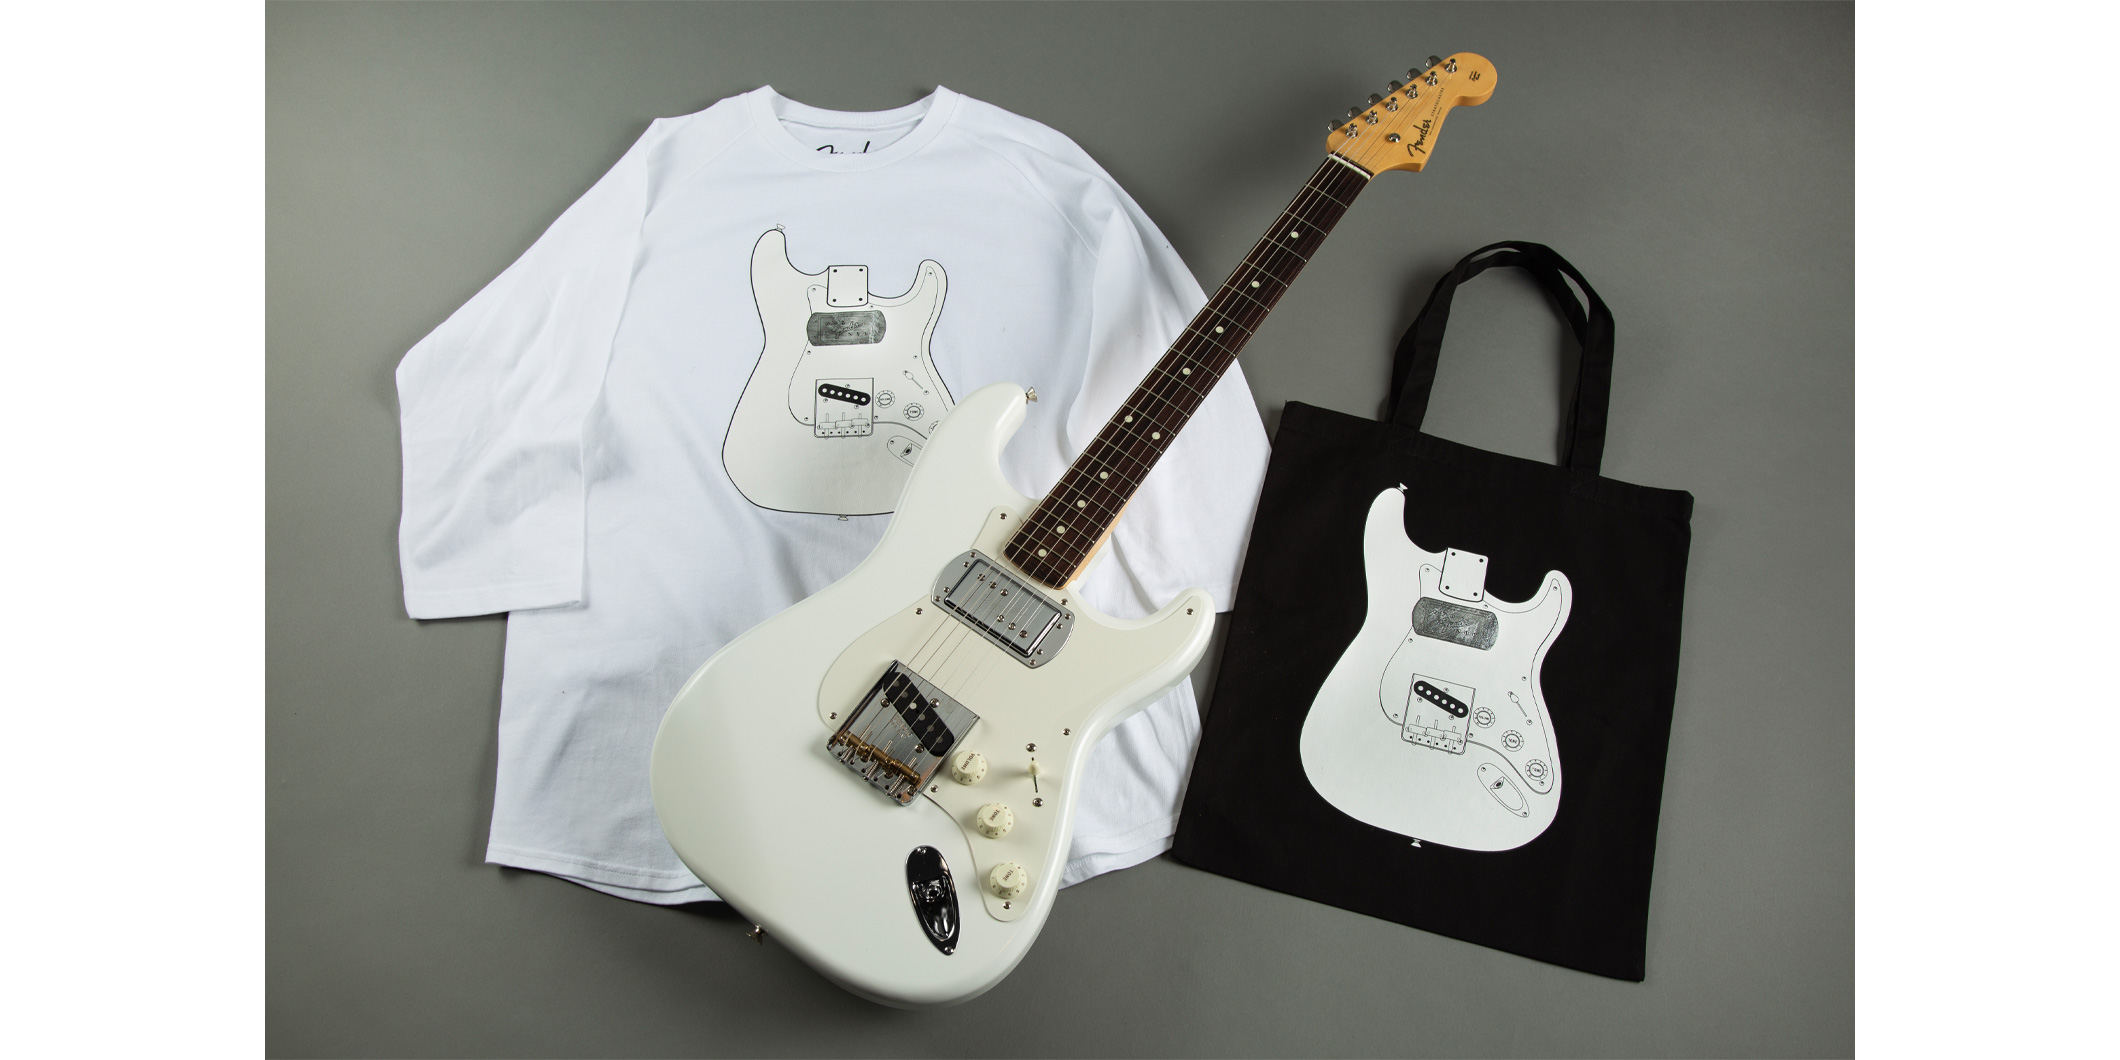 フェンダー、山内総一郎の新シグネチャー・ギターを記念したTシャツとトートバッグの販売を開始